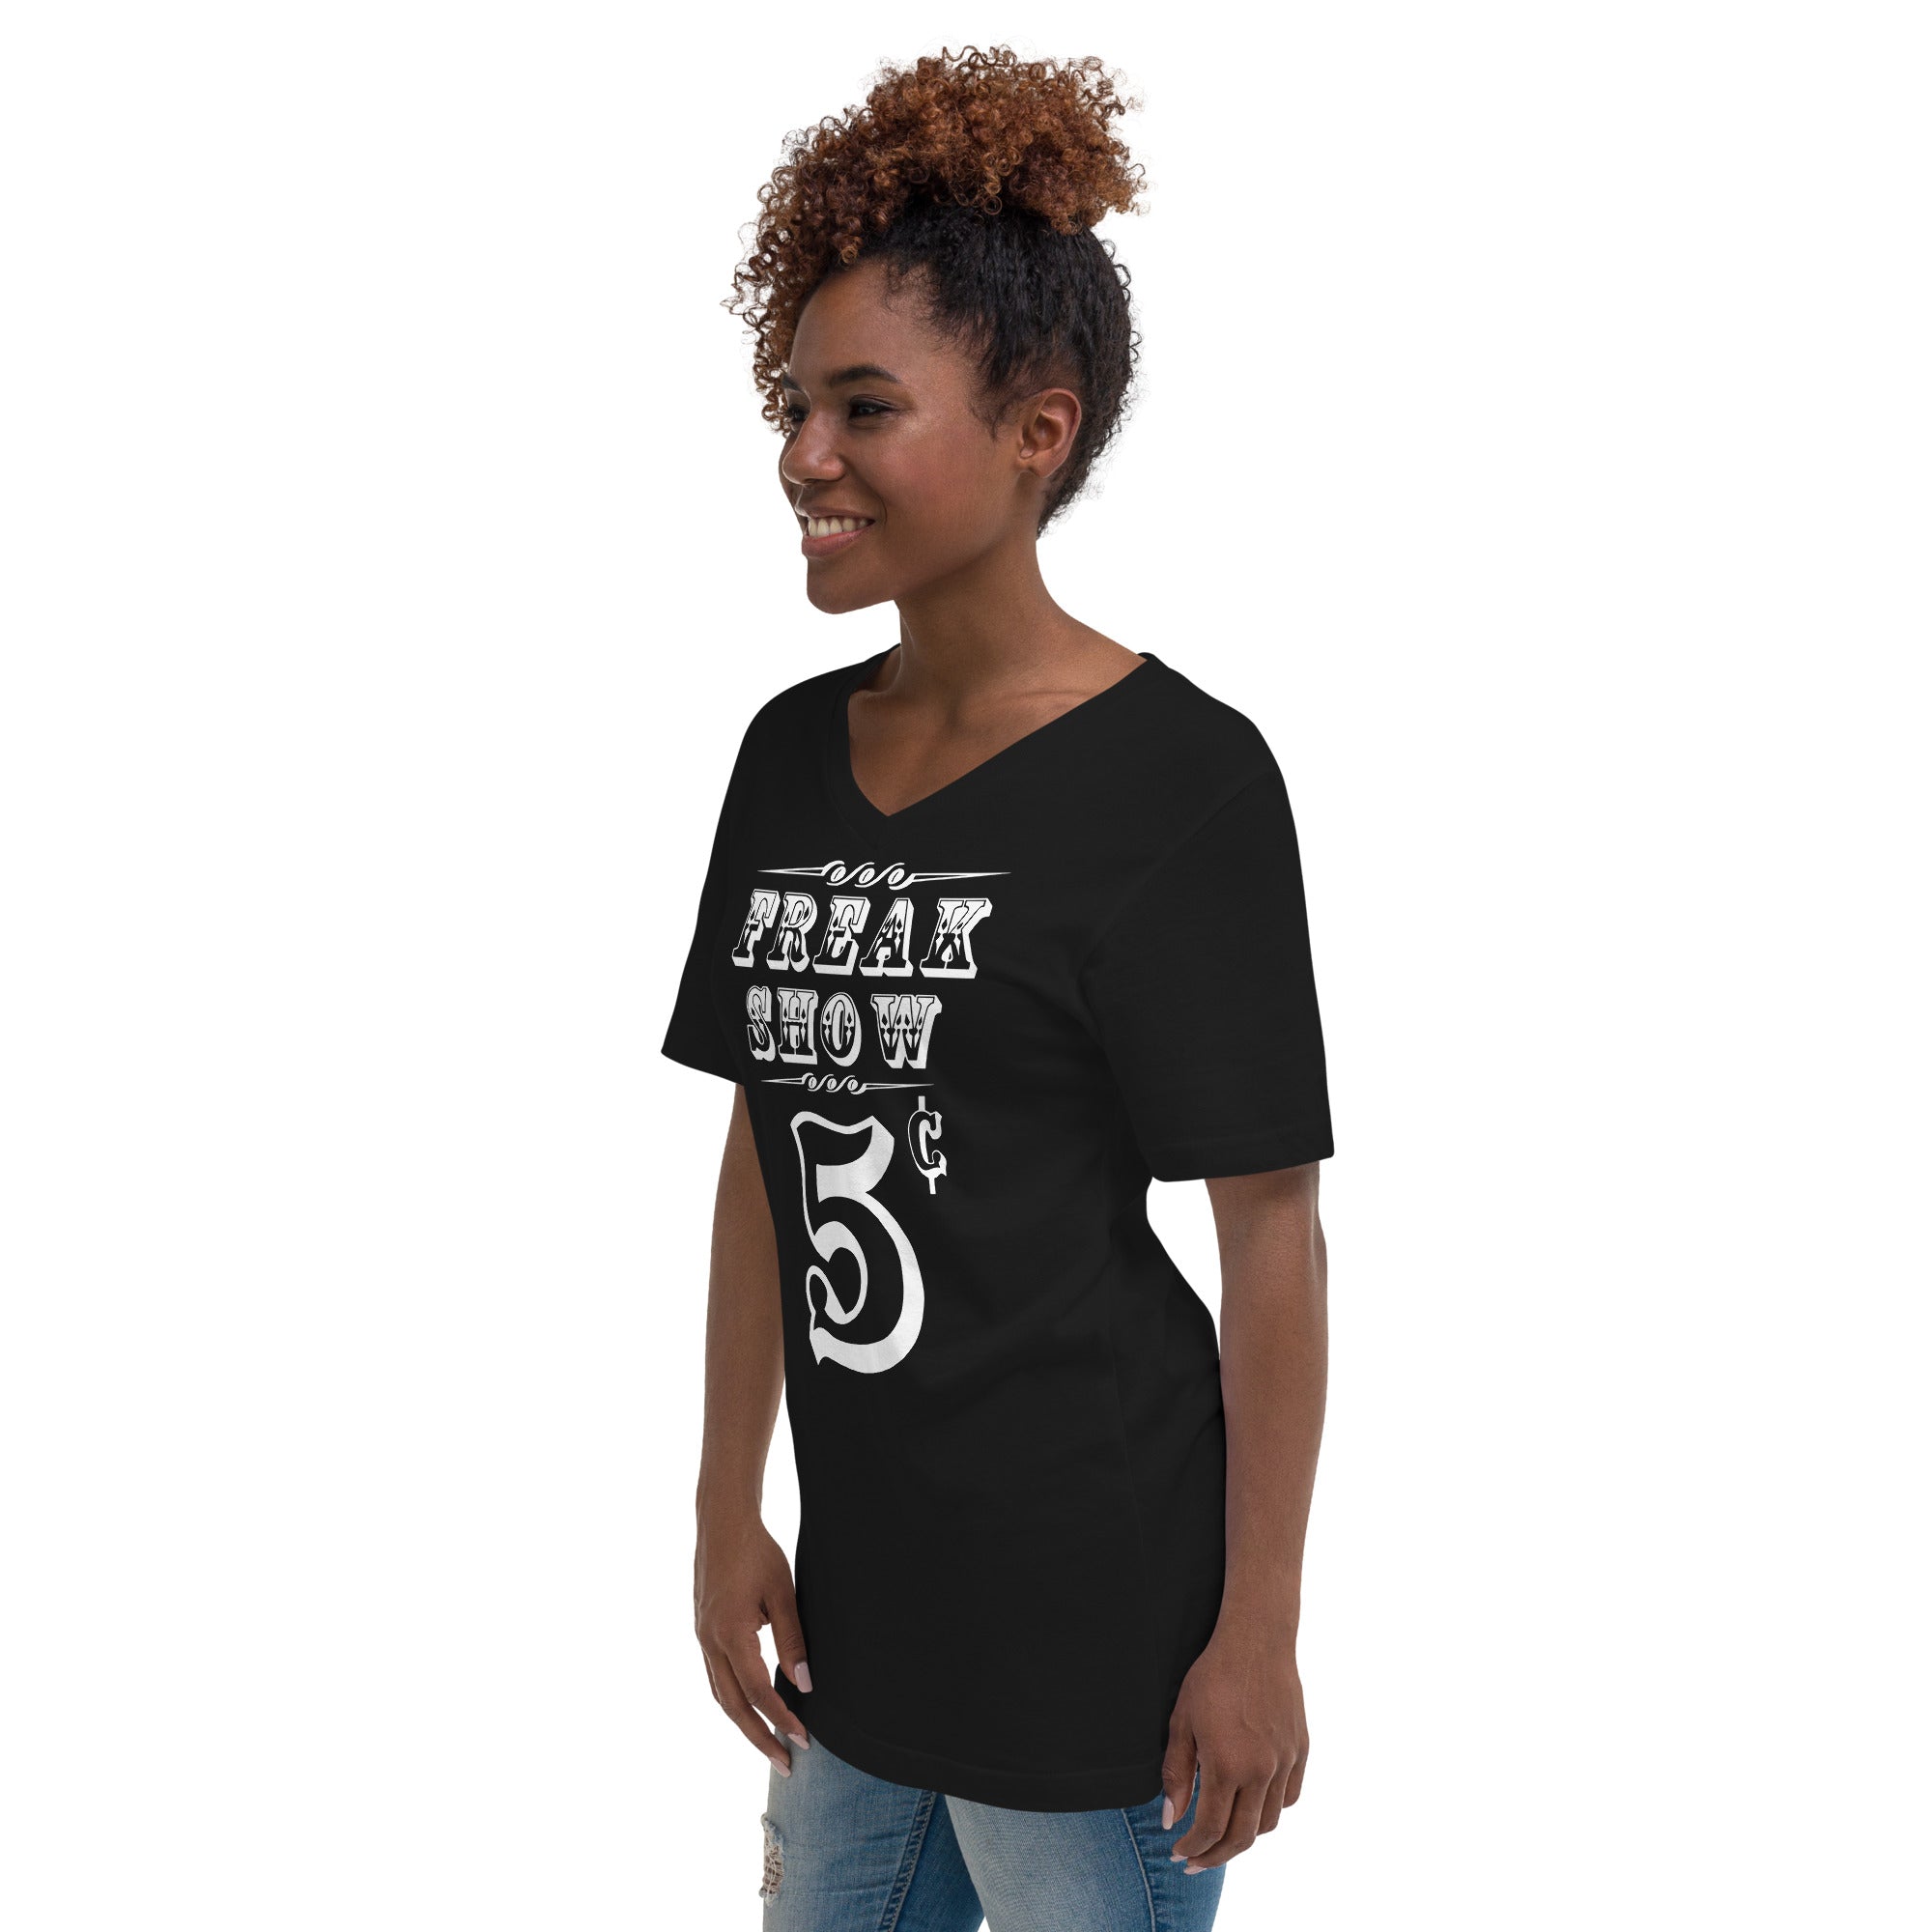 Carnival Freak Show 5 Cents Women’s Short Sleeve V-Neck T-Shirt - Edge of Life Designs